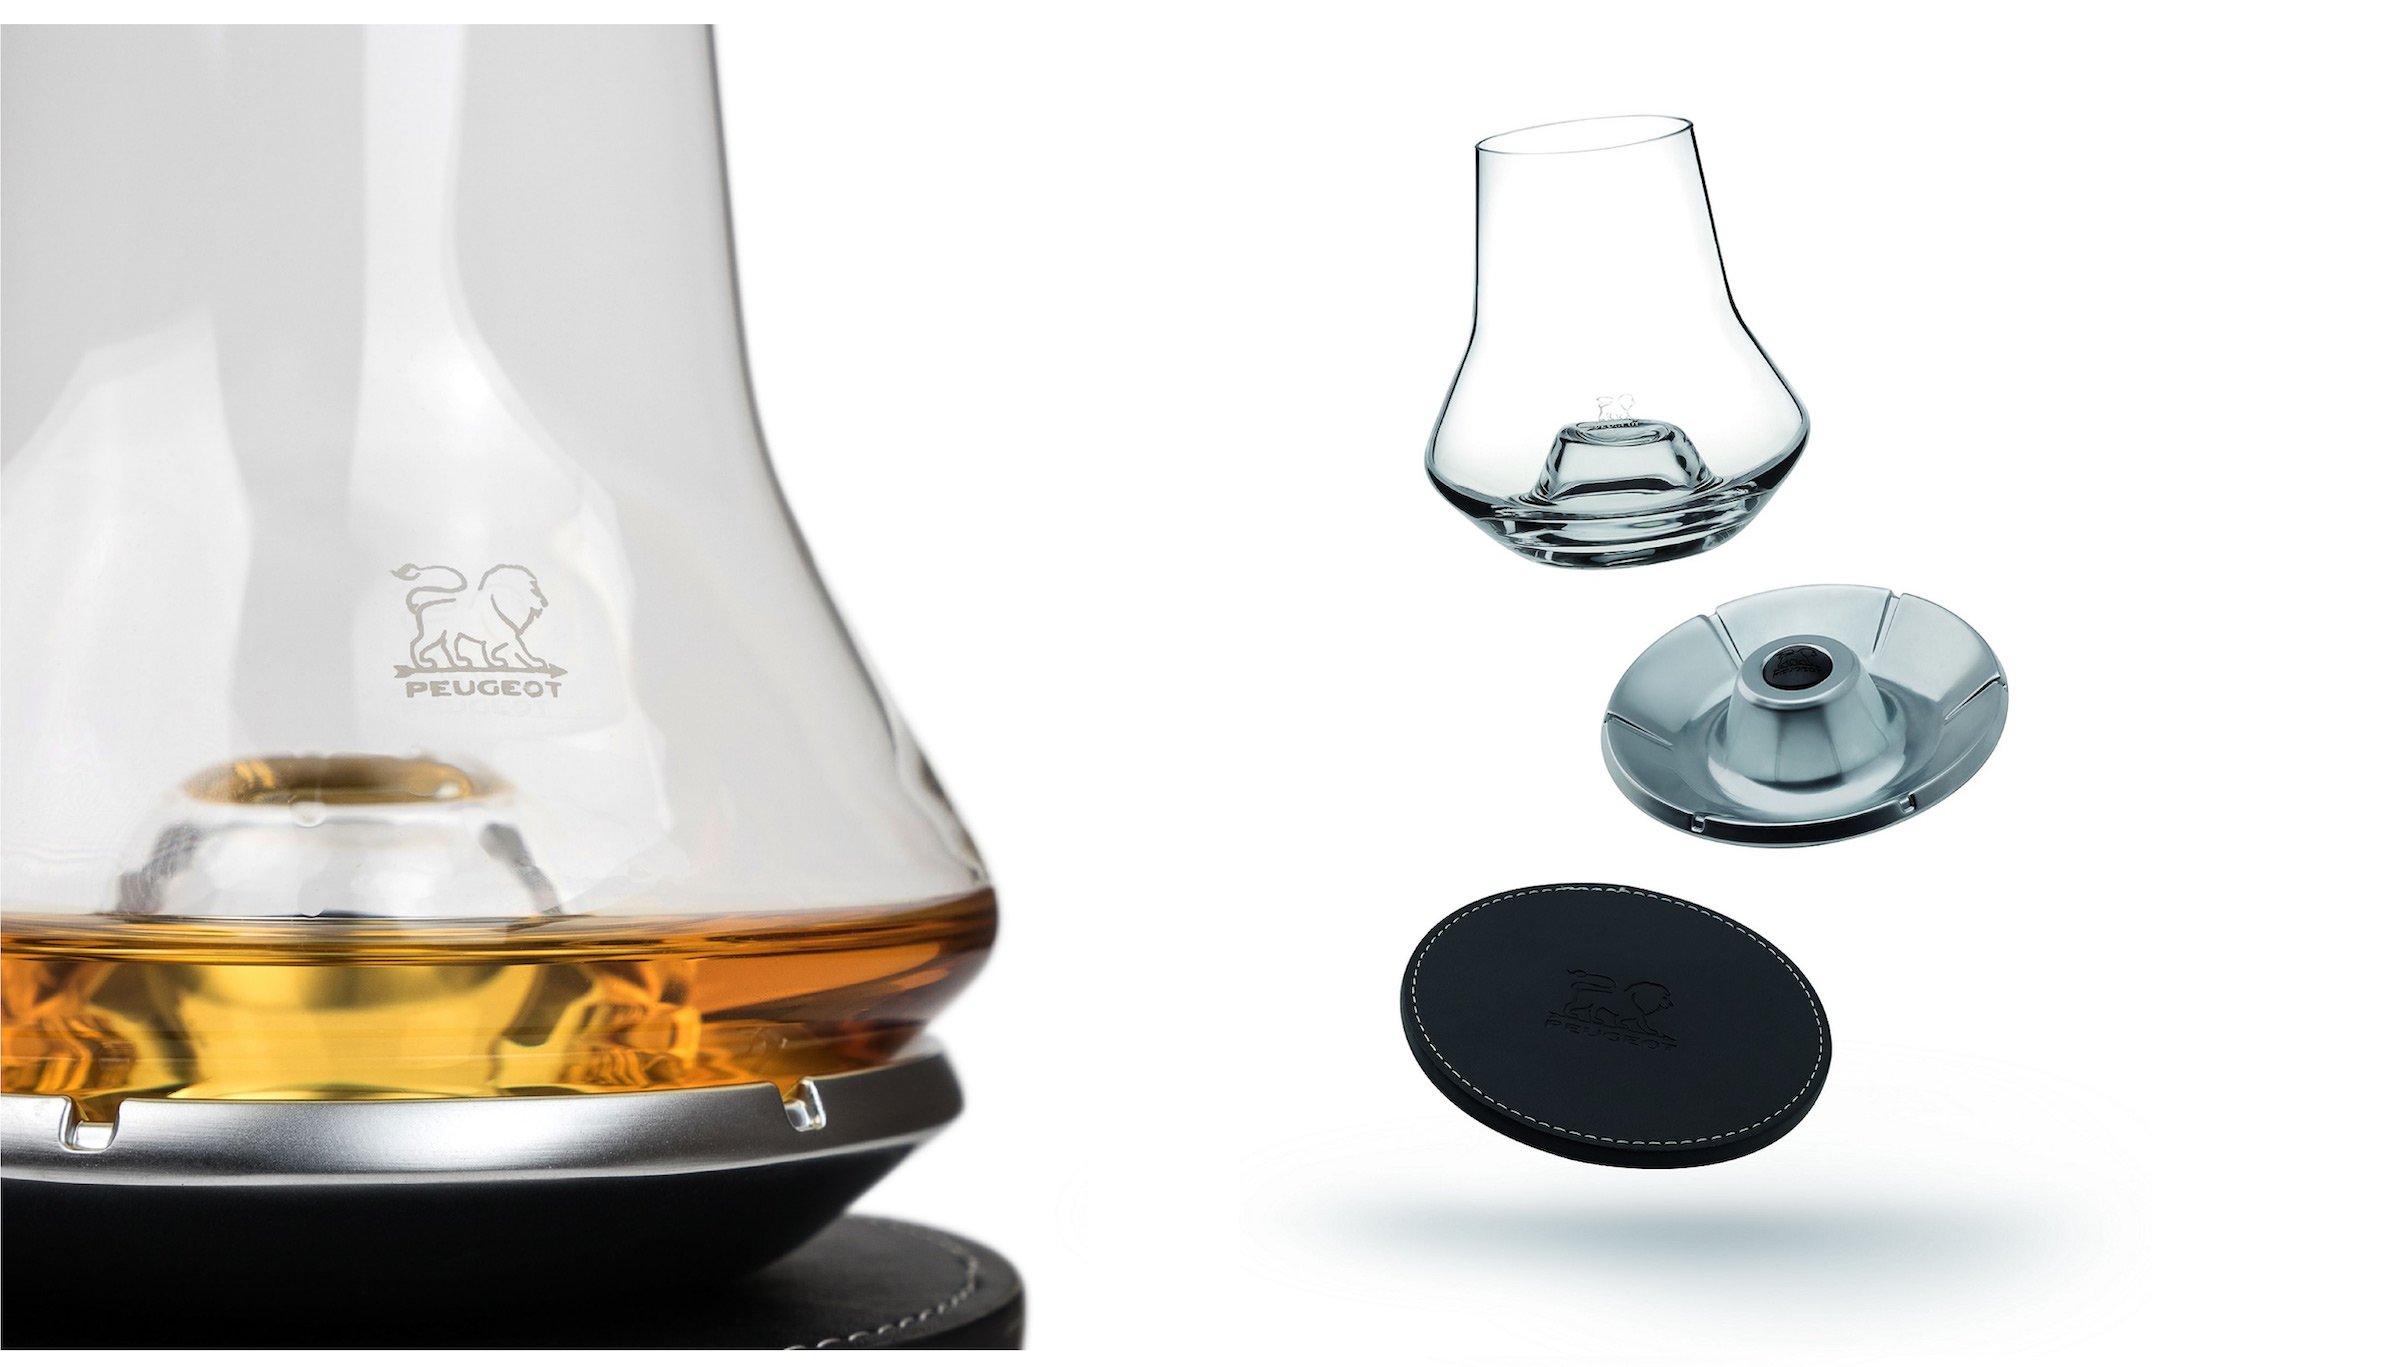 The Peugeot Impitoyable Whiskey Tasting Set